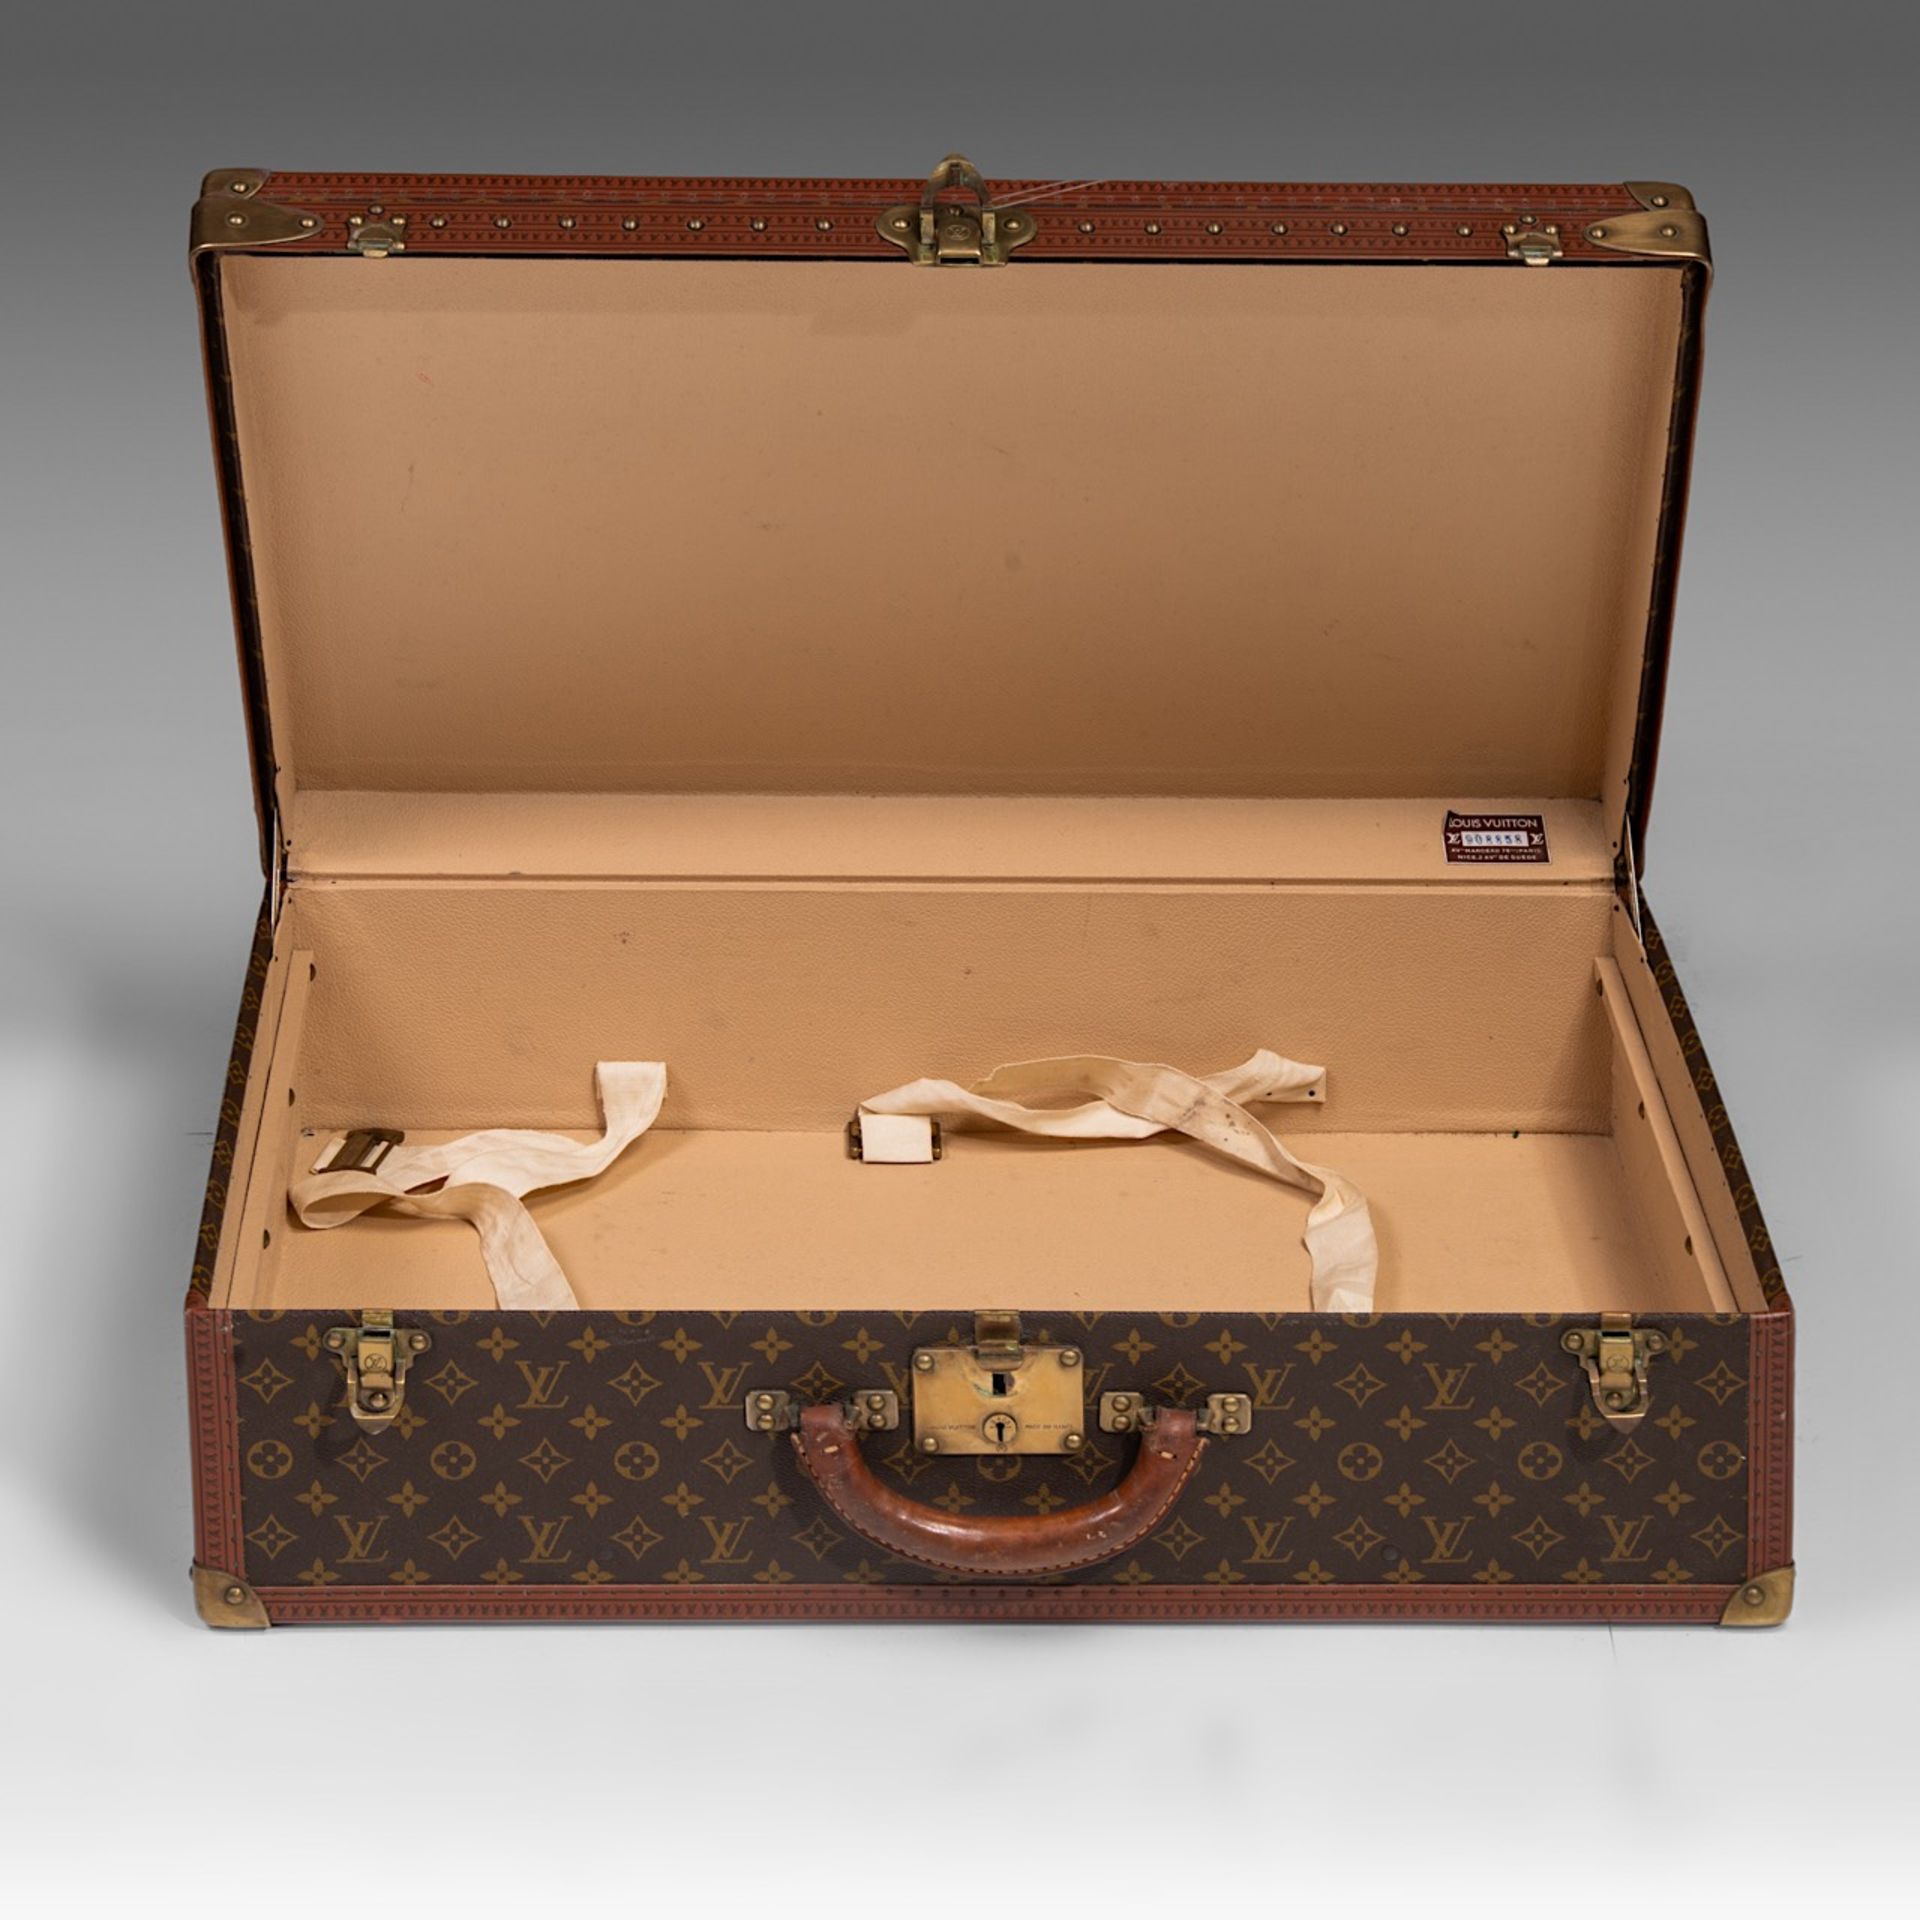 A vintage Louis Vuitton coffer, Model Alzer 70, 47 - 70 - 21,5 cm - Image 9 of 9